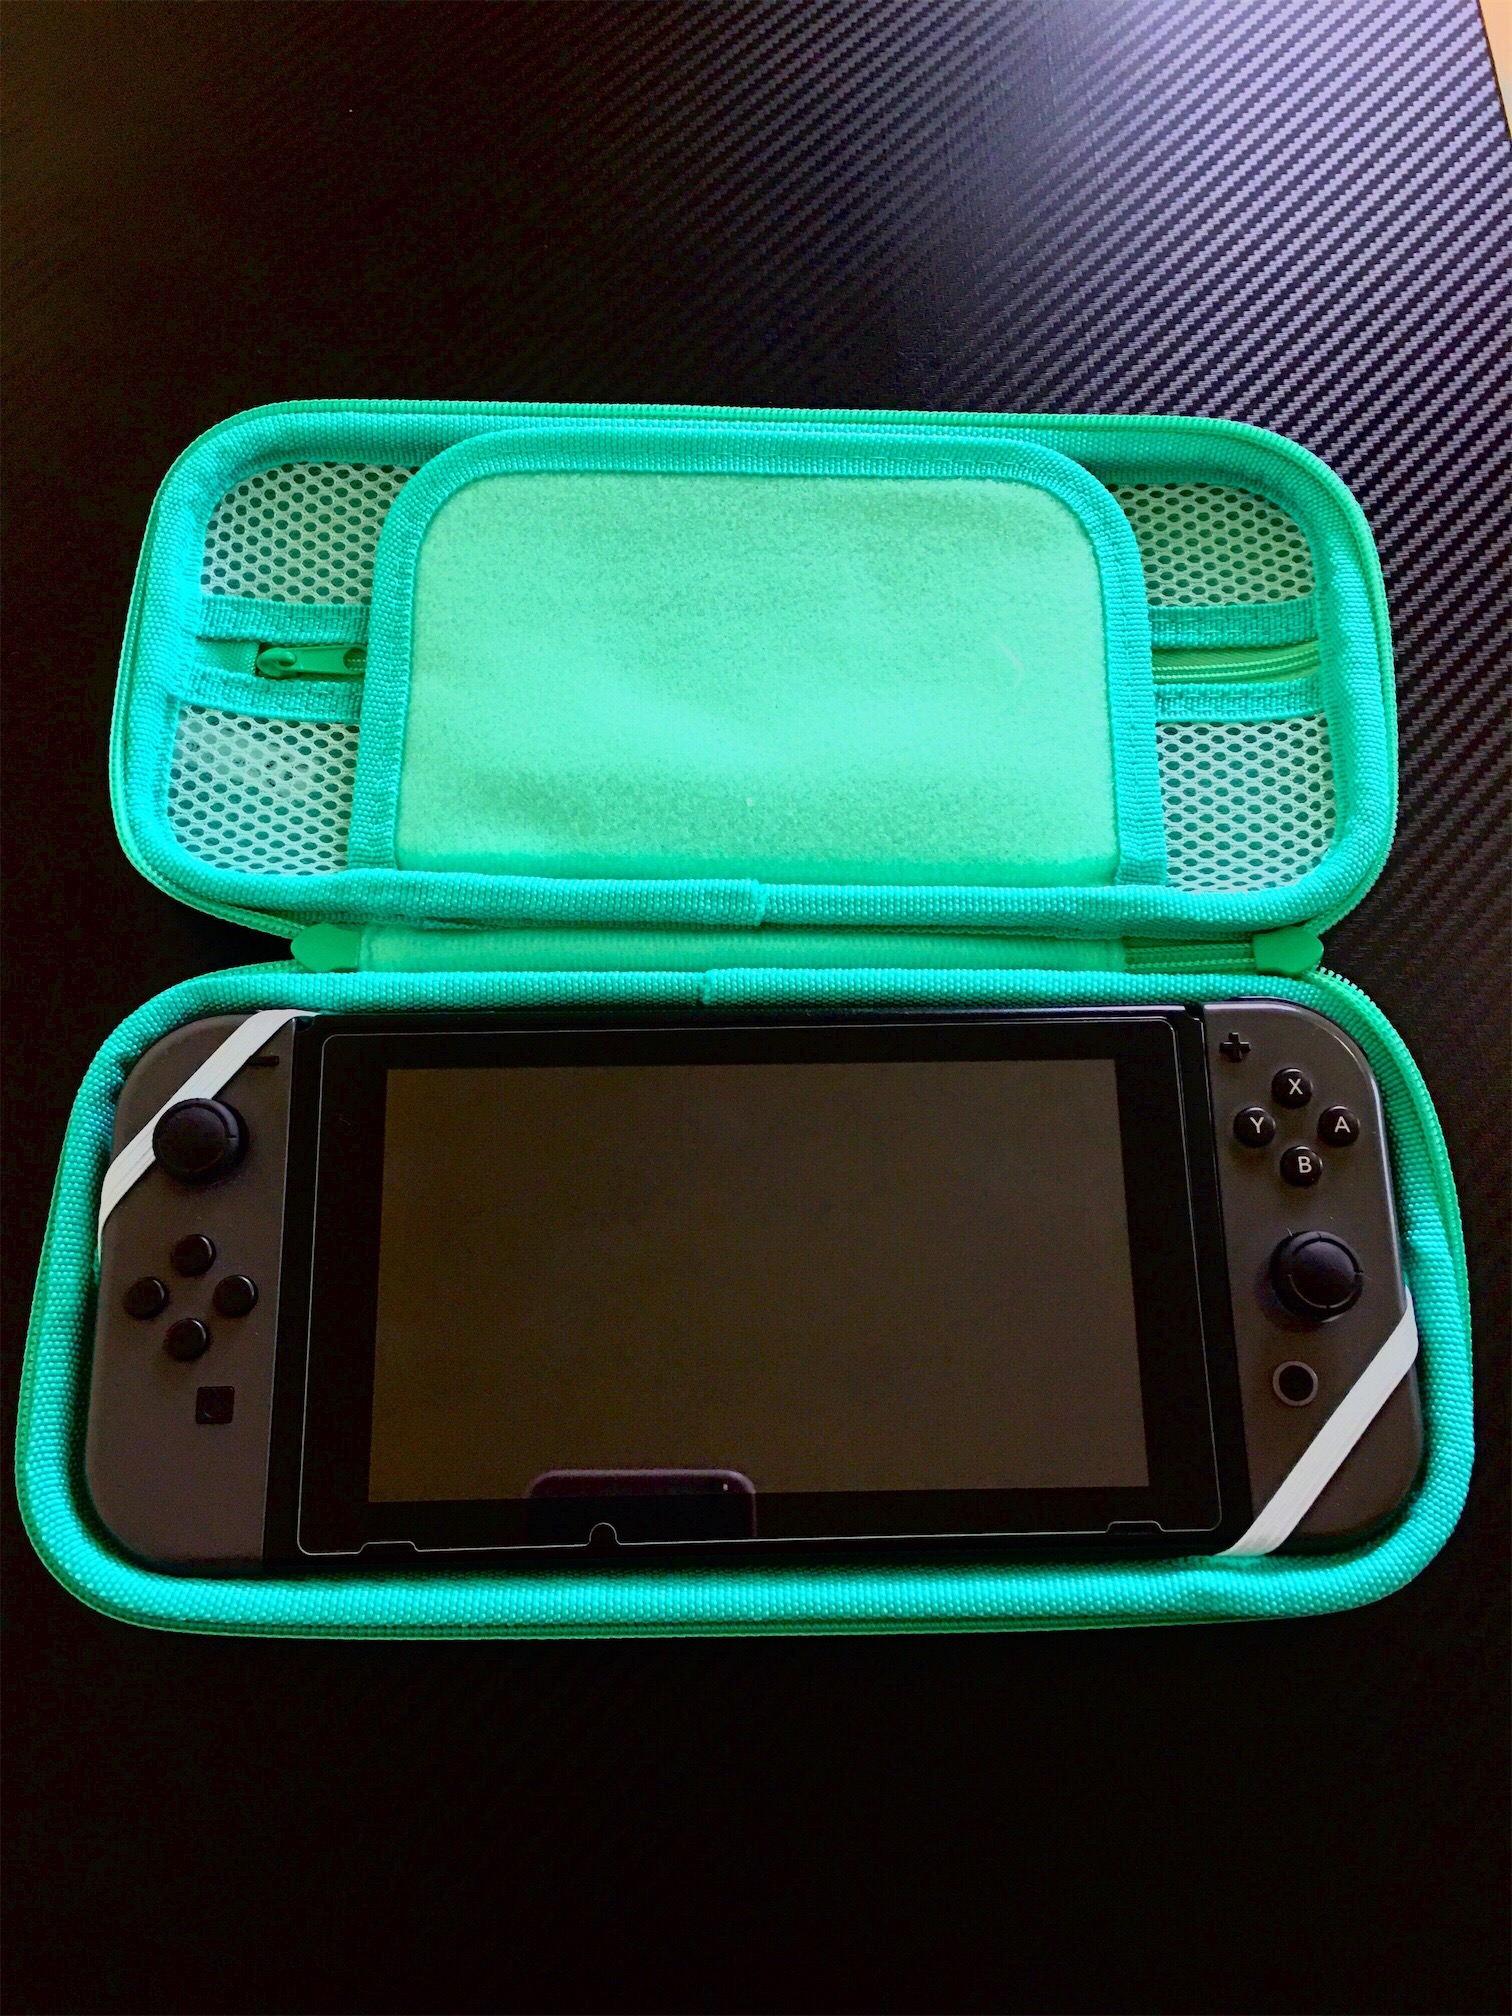 accesorios para electronica - Bulto Protector para Nintendo Switch  0